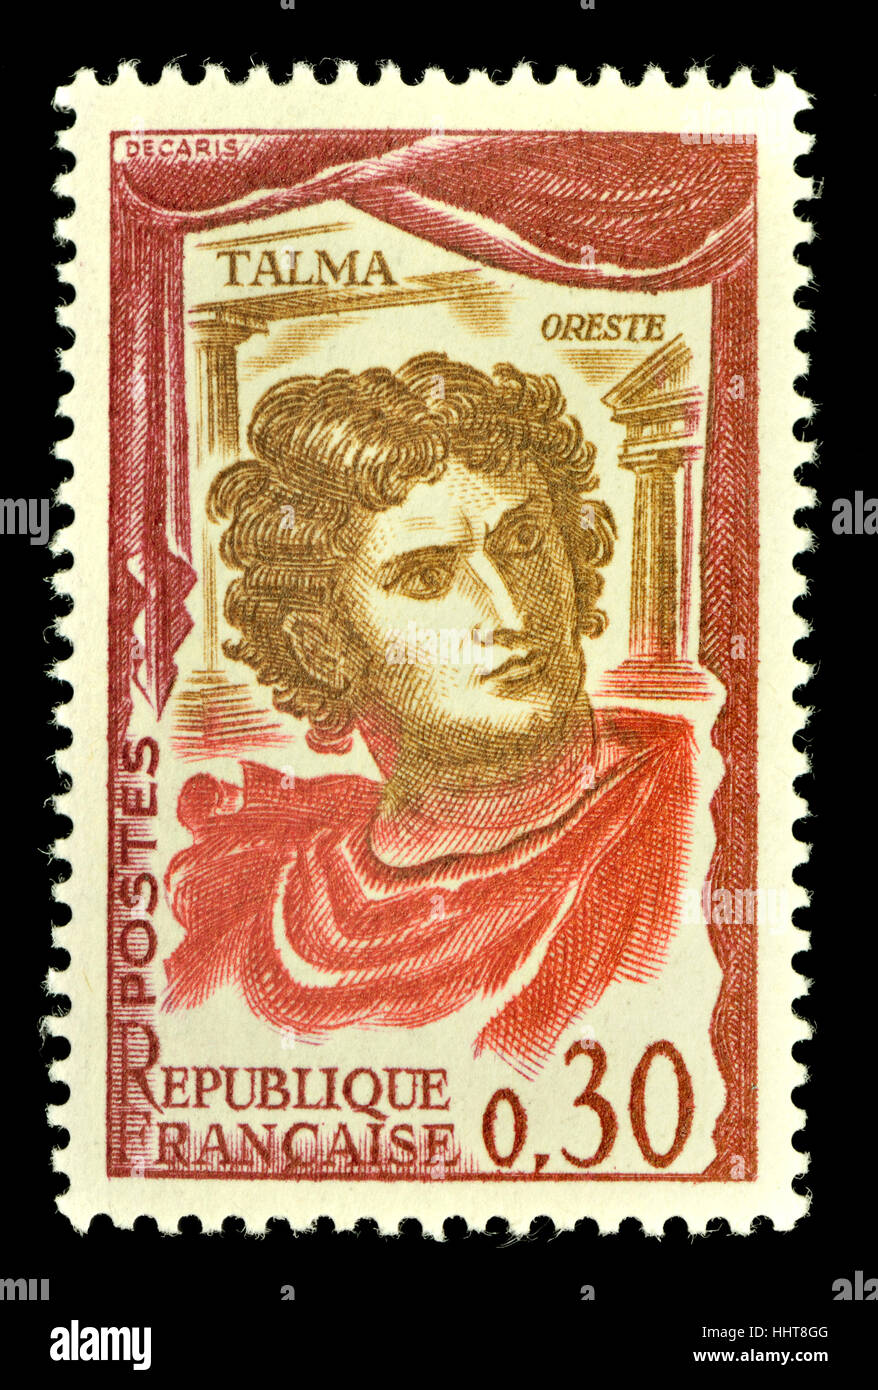 Französische Briefmarke (1961 - französischer Schauspieler und Schauspielerinnen): François-Joseph Talma (1763 – 1826) in der Rolle des Orest Stockfoto